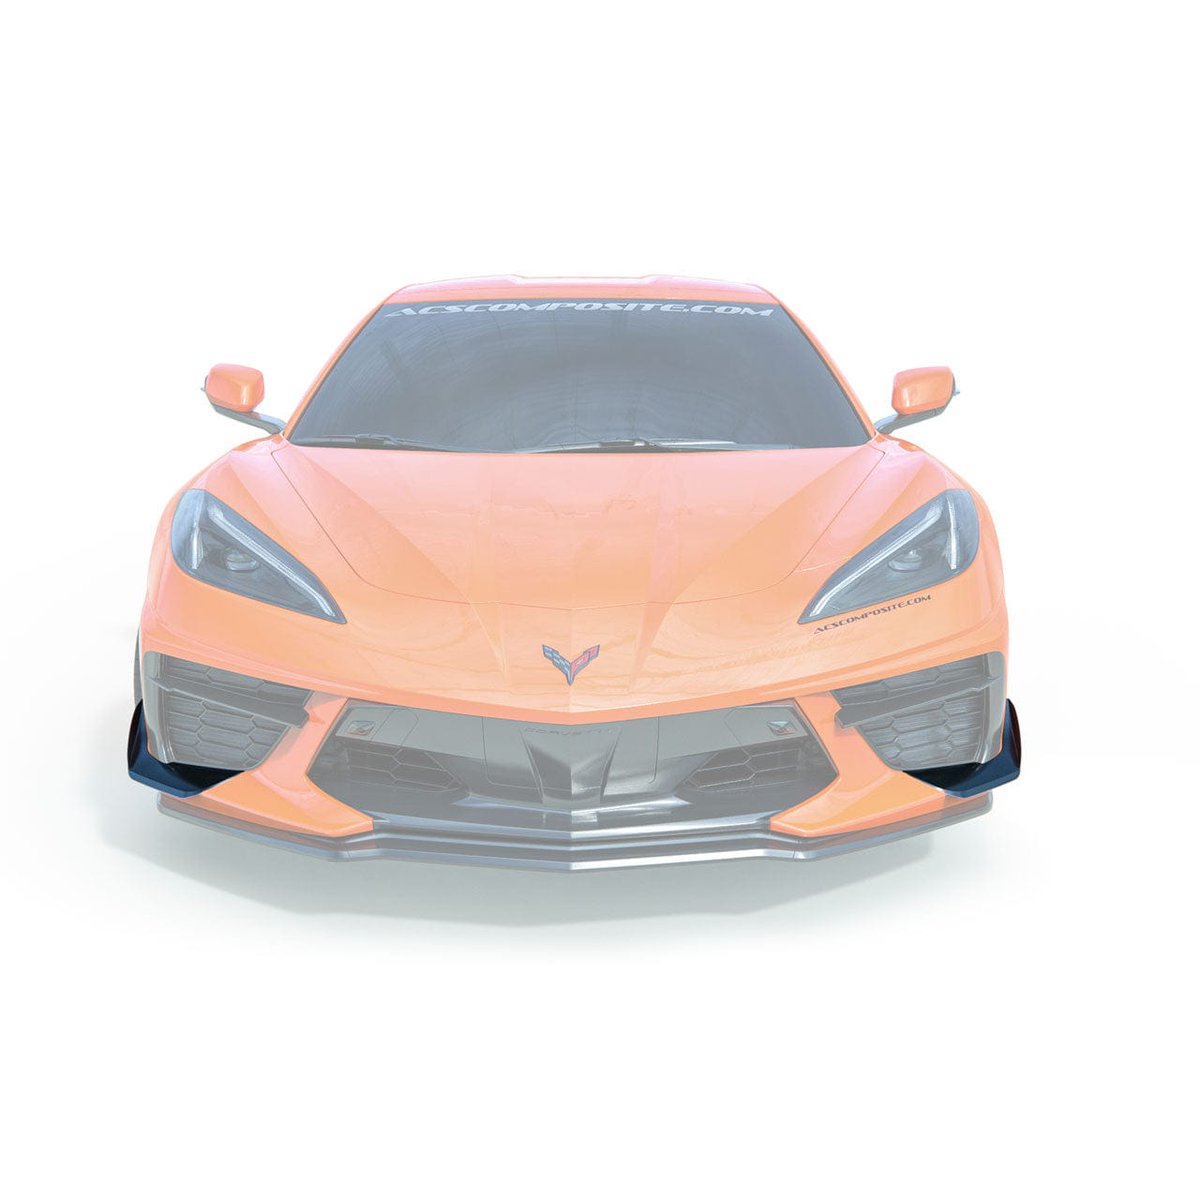 One step closer to the C8 Z06: New ACS Mod! 🏎️ #Corvette #C8Corvette #C8 #Stingray #C8Stingray #acscomposite - mailchi.mp/acscomposite/a…